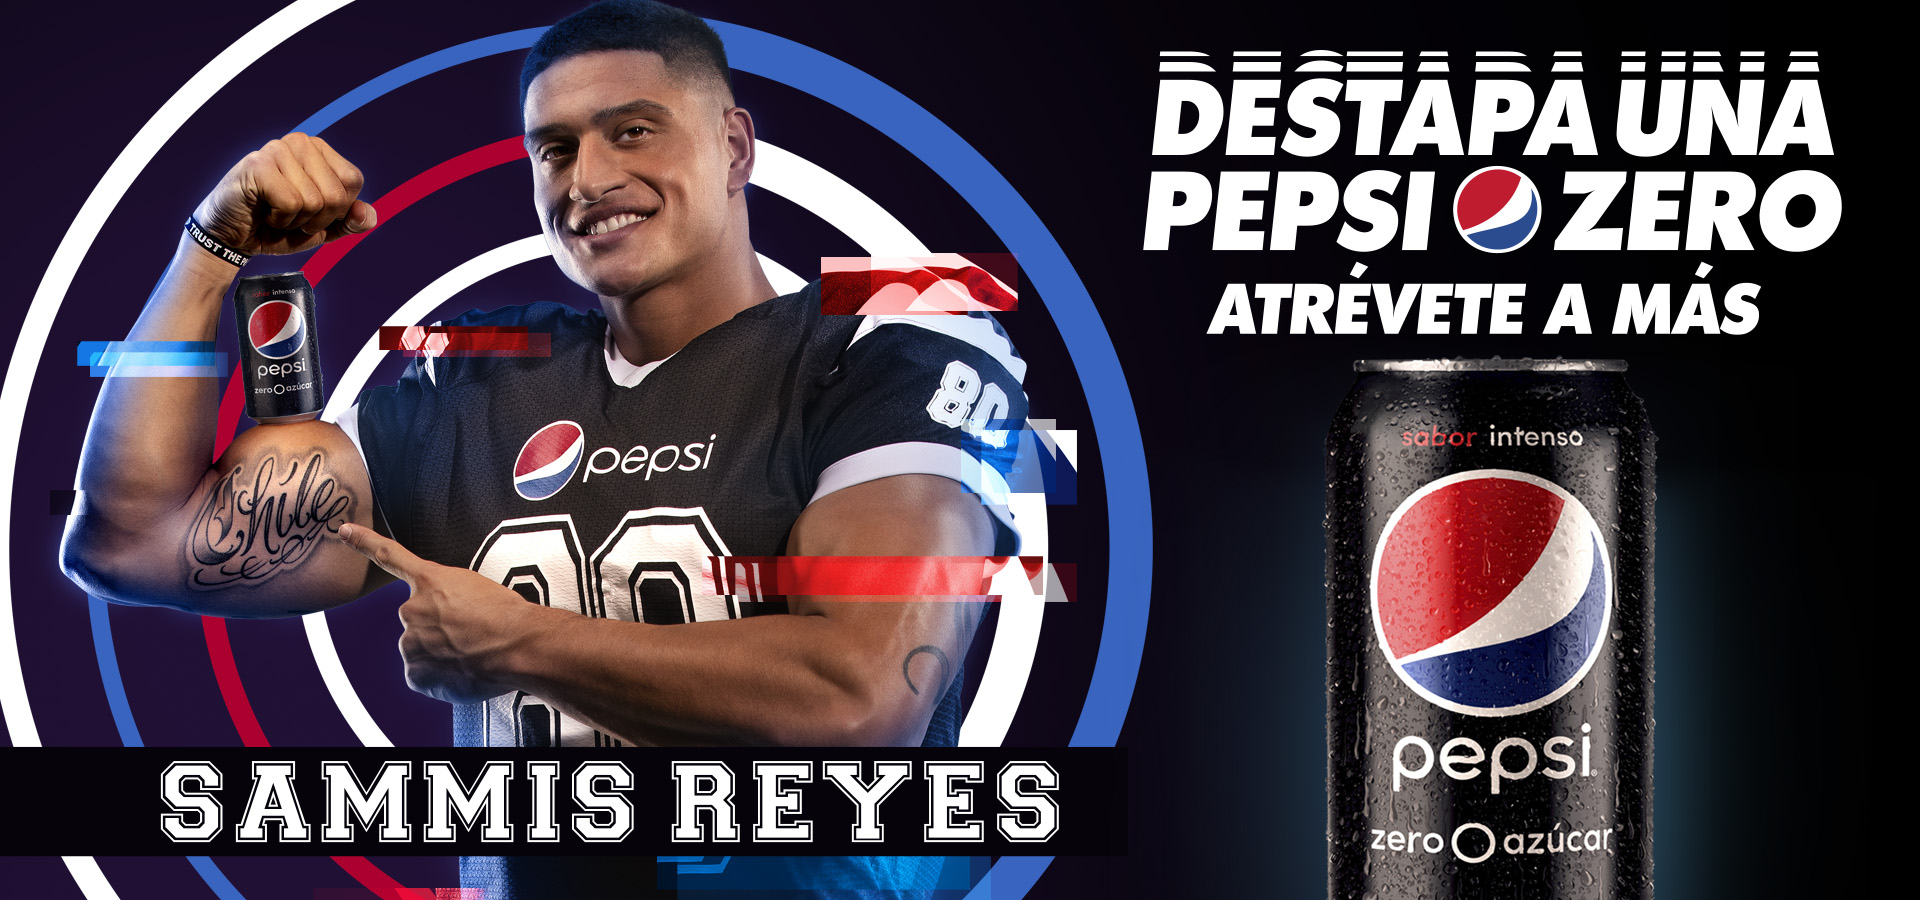 Sammis Reyes en campaña  para Pepsi